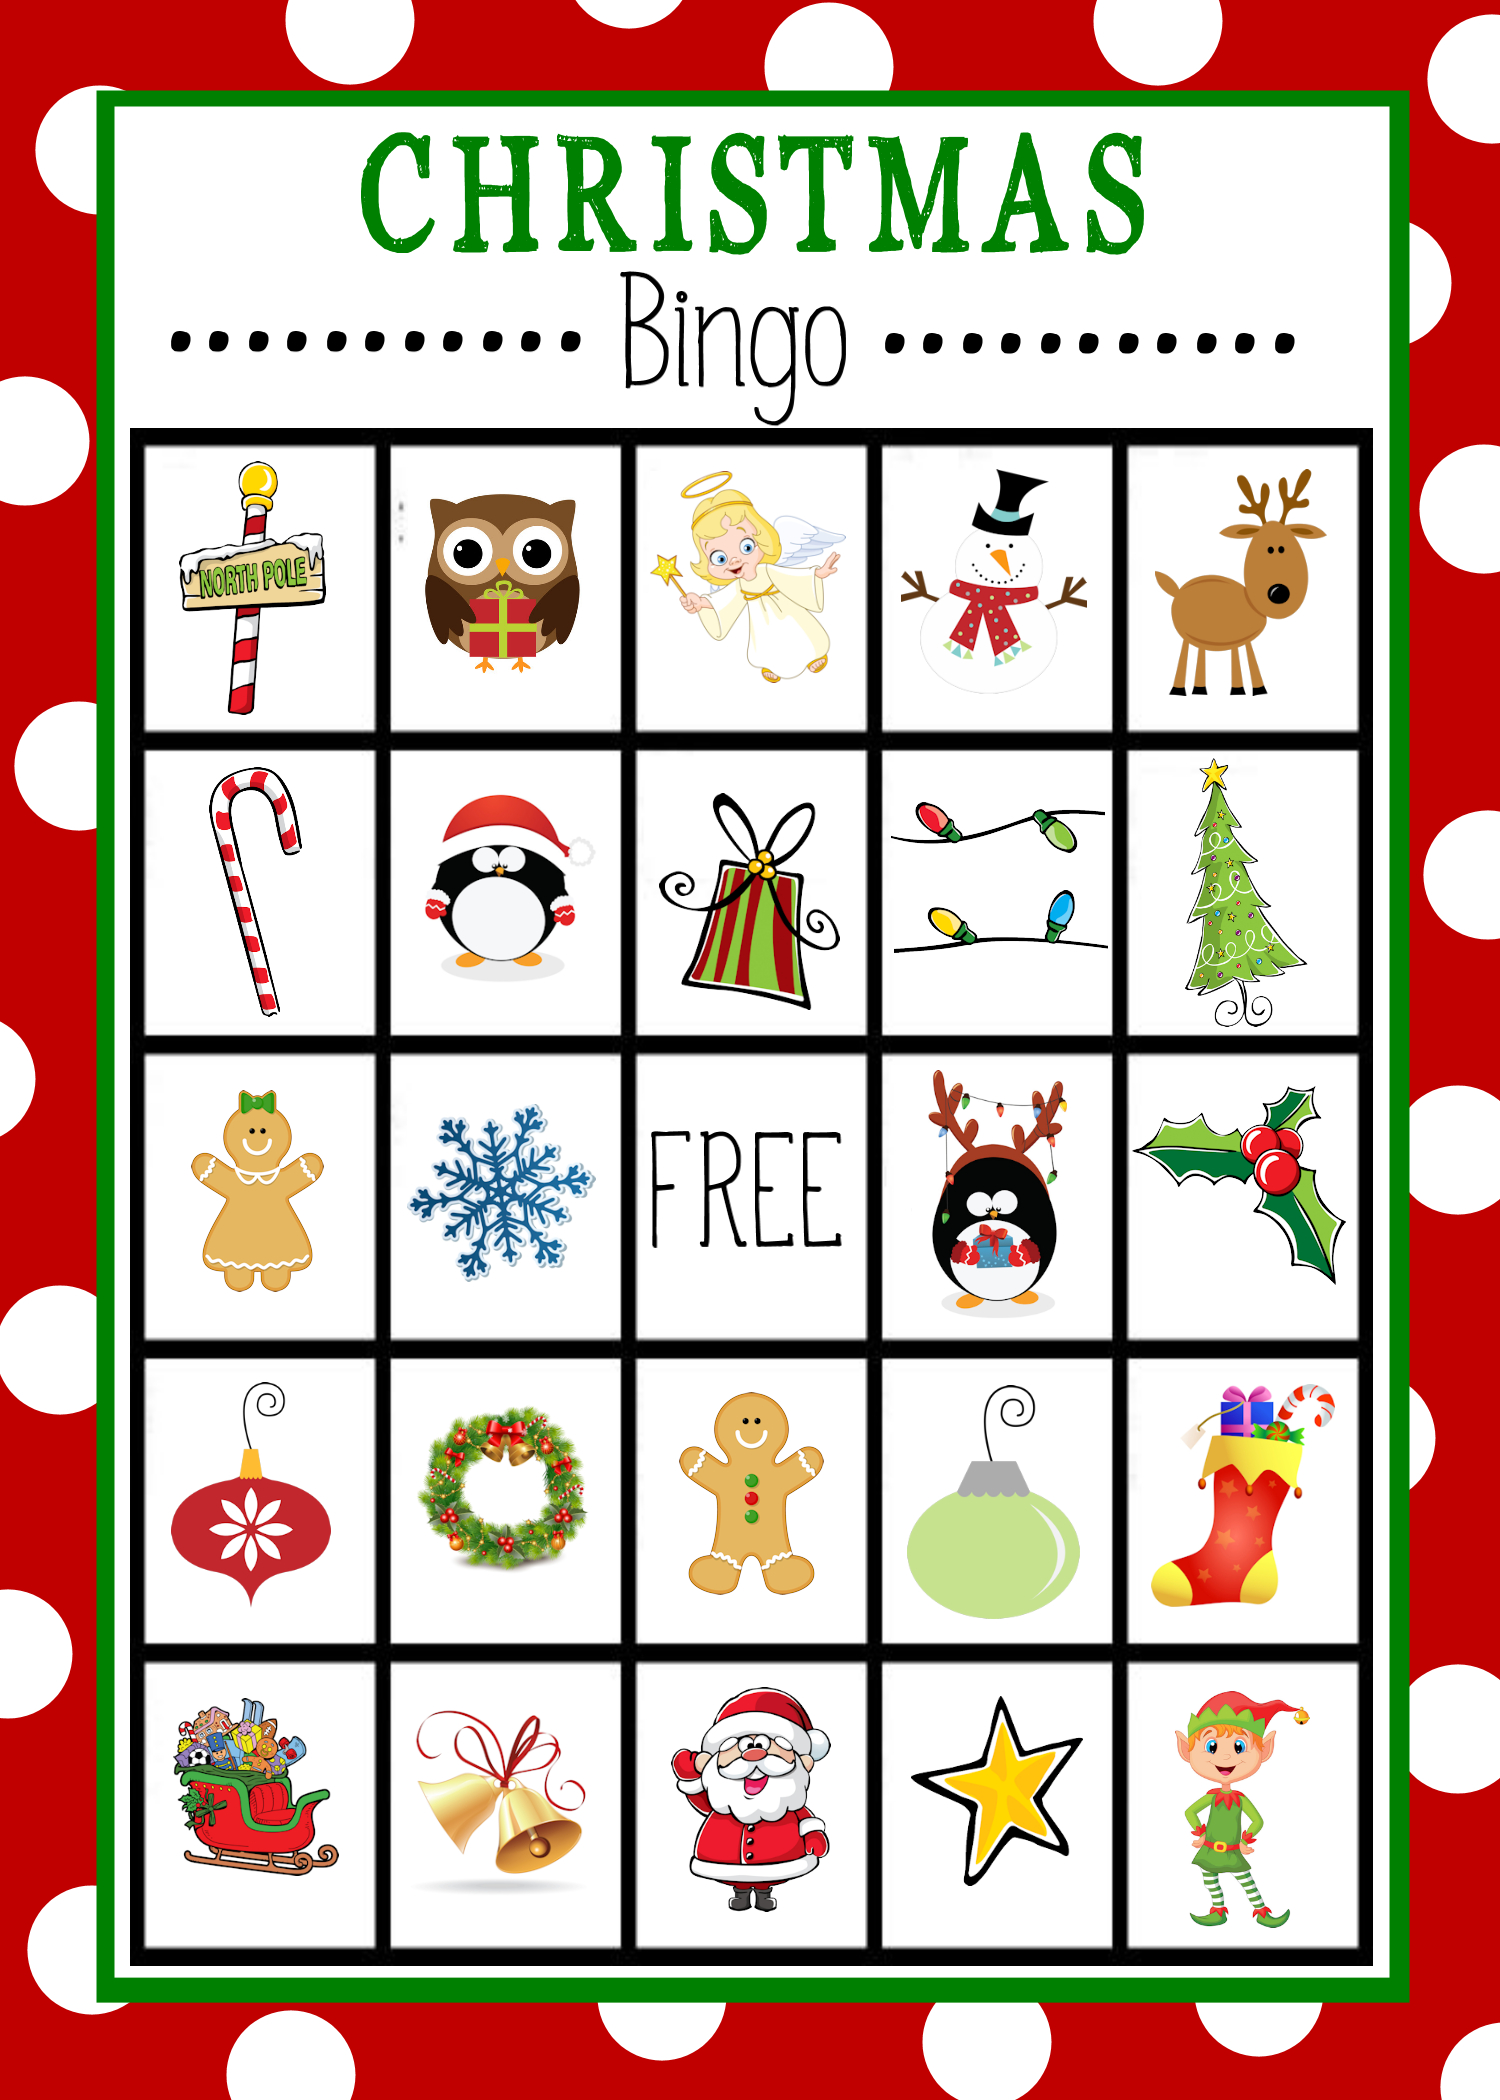 Free Printable Christmas Bingo Game | Christmas | Pinterest - Free Printable Bingo